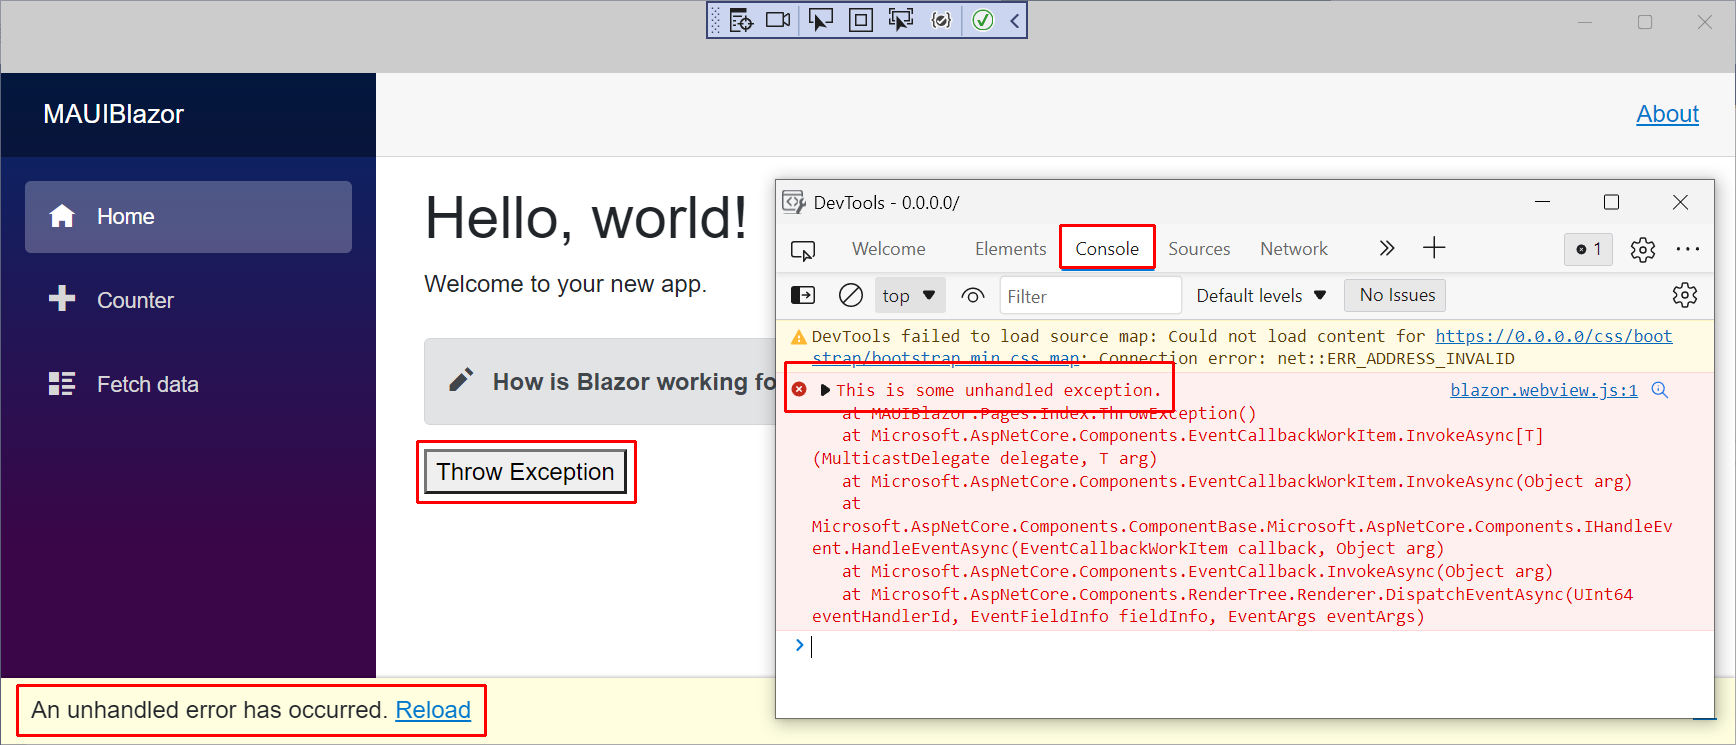 Fenêtre Microsoft Edge DevTools pour une application Blazor Hybrid s’exécutant sur Windows